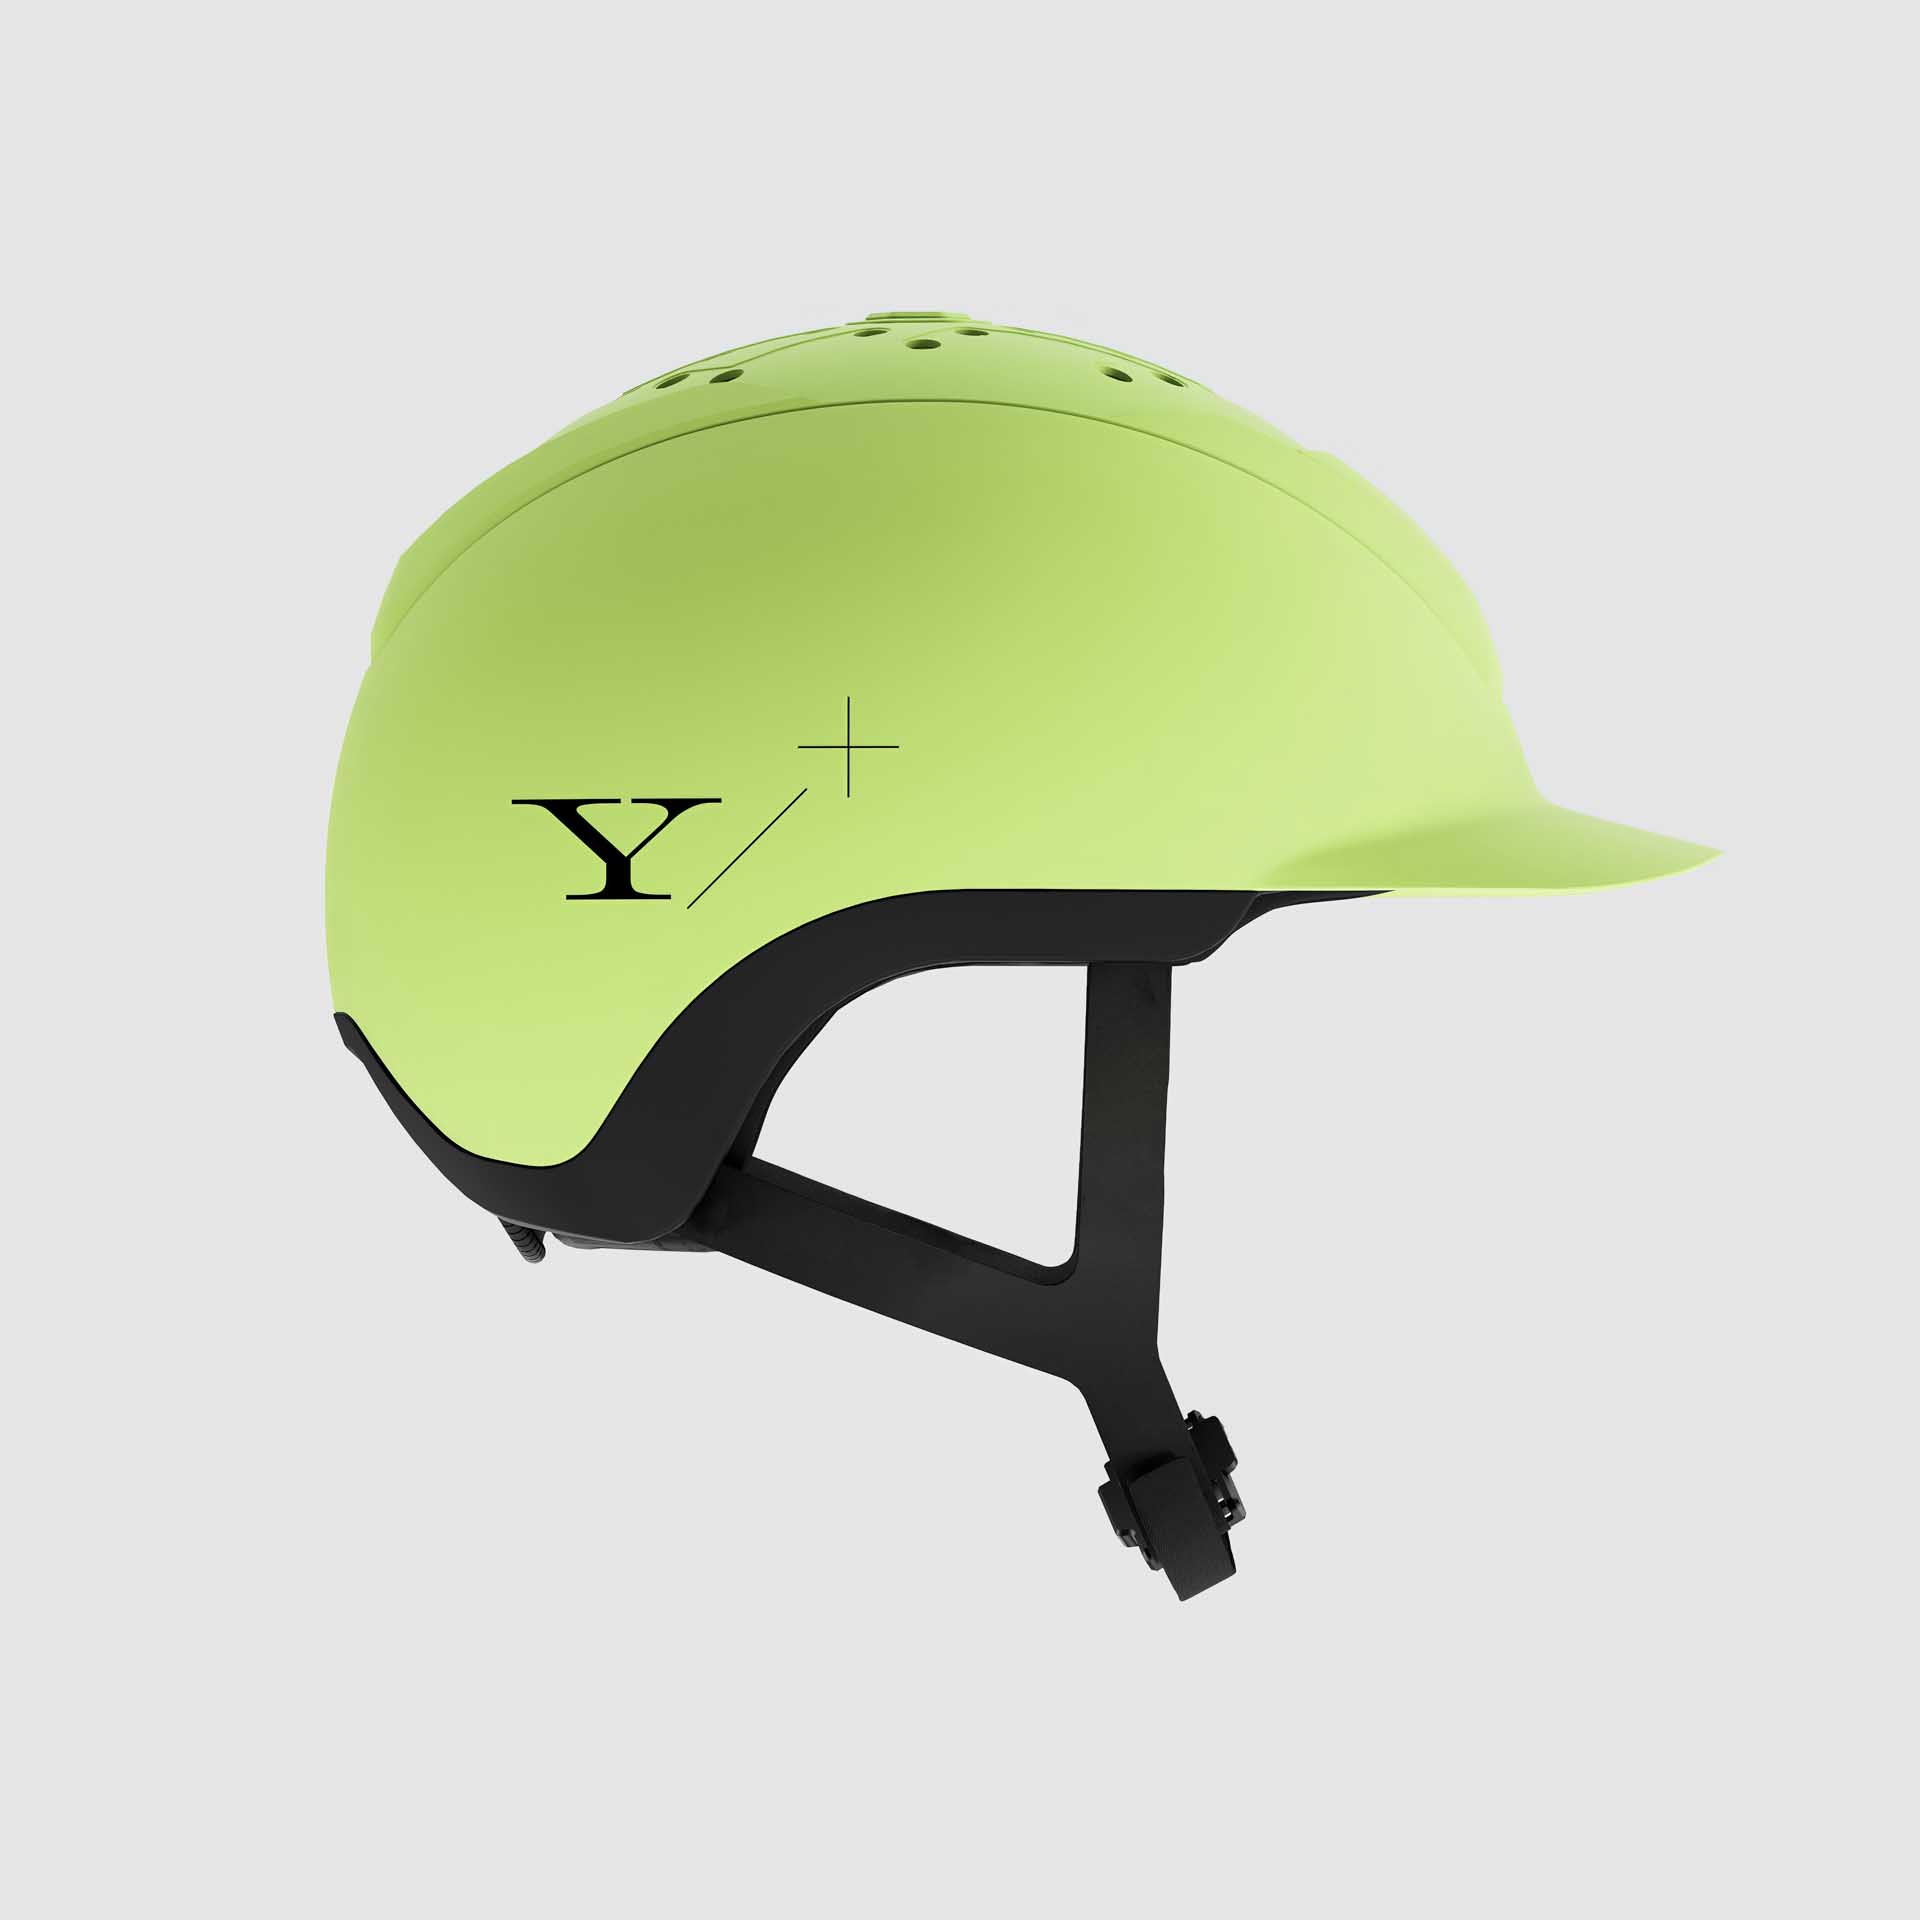 Yelm Reithelm Hybrid Helmet 1.0